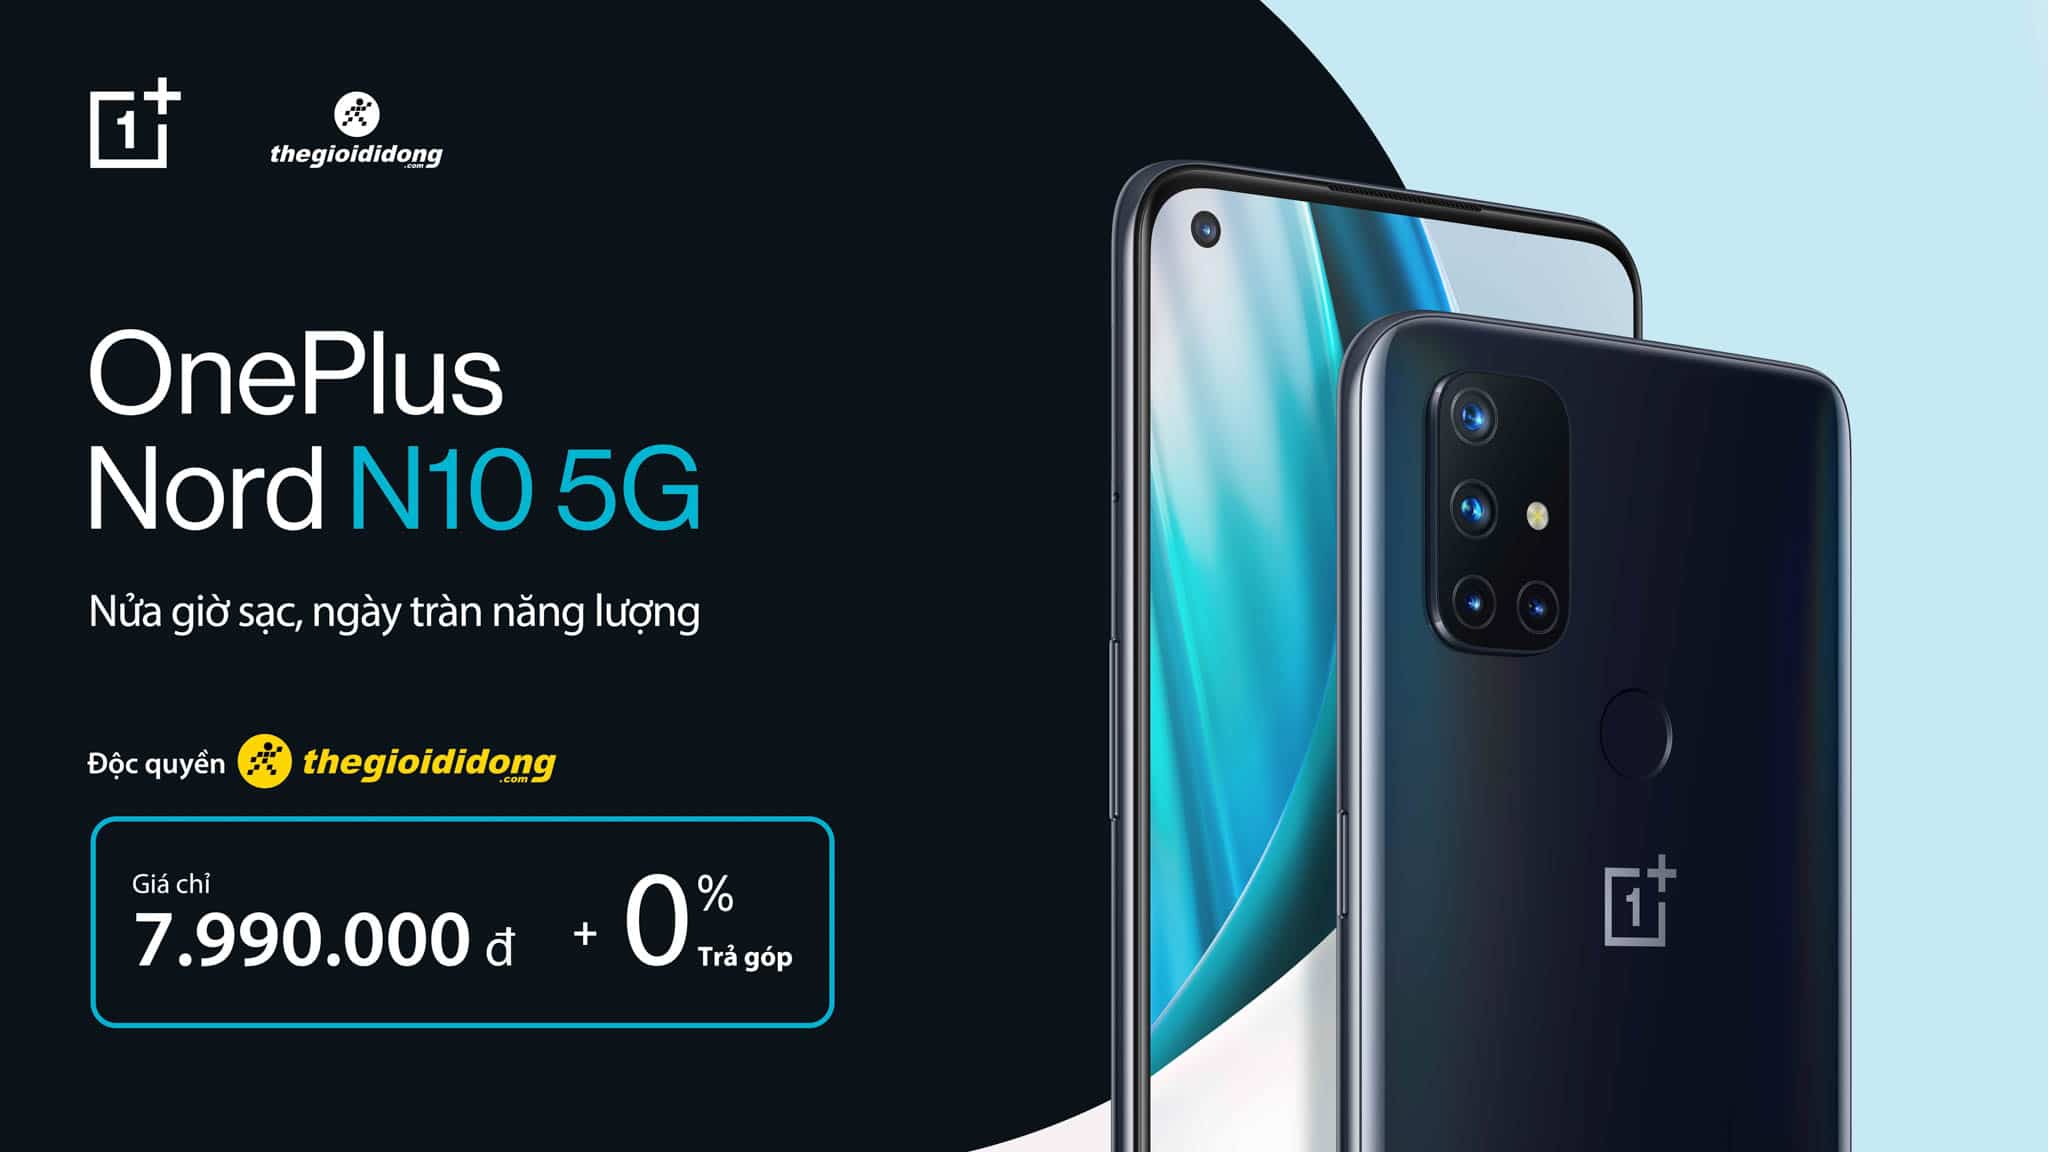 OnePlus Nord N10 5G chính thức ra mắt: Smartphone với kết nối 5G giá tốt nhất hiện tại